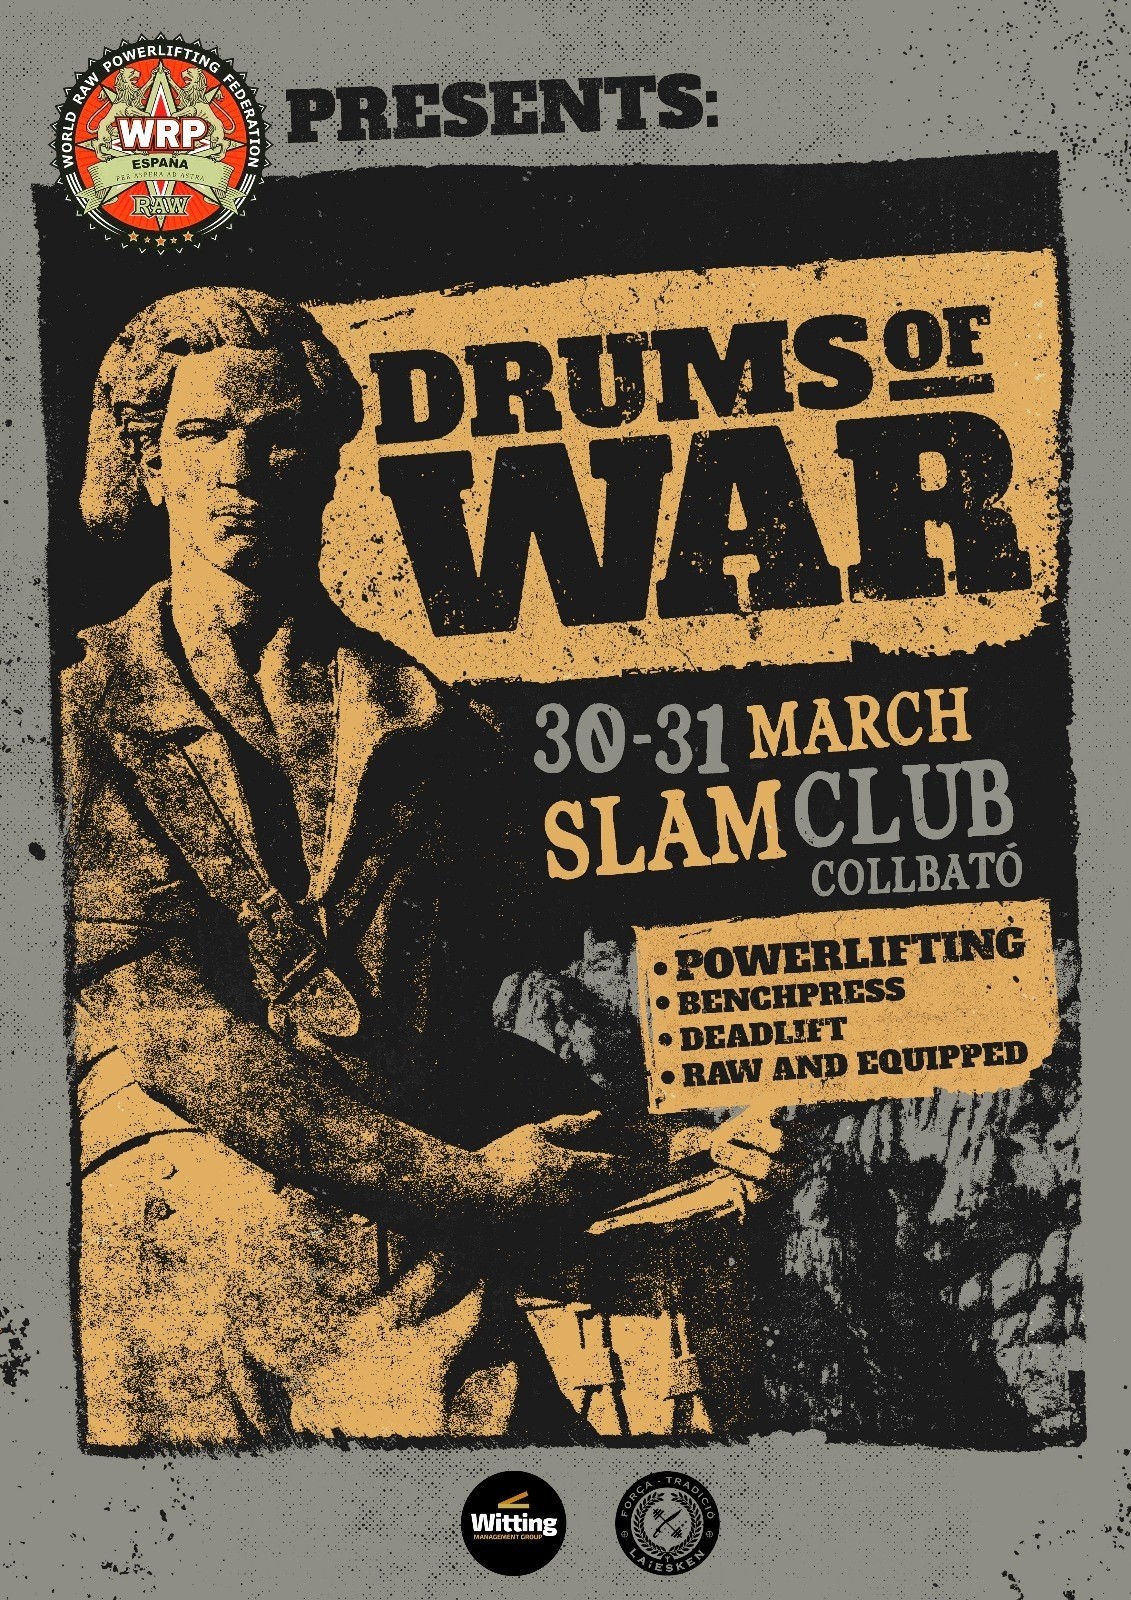 Международный турнир "Drums of war" по пауэрлифтингу и его отдельным движениям по версии WRPF/WEPF, Испания/ Барселона, 30-31.03.2019